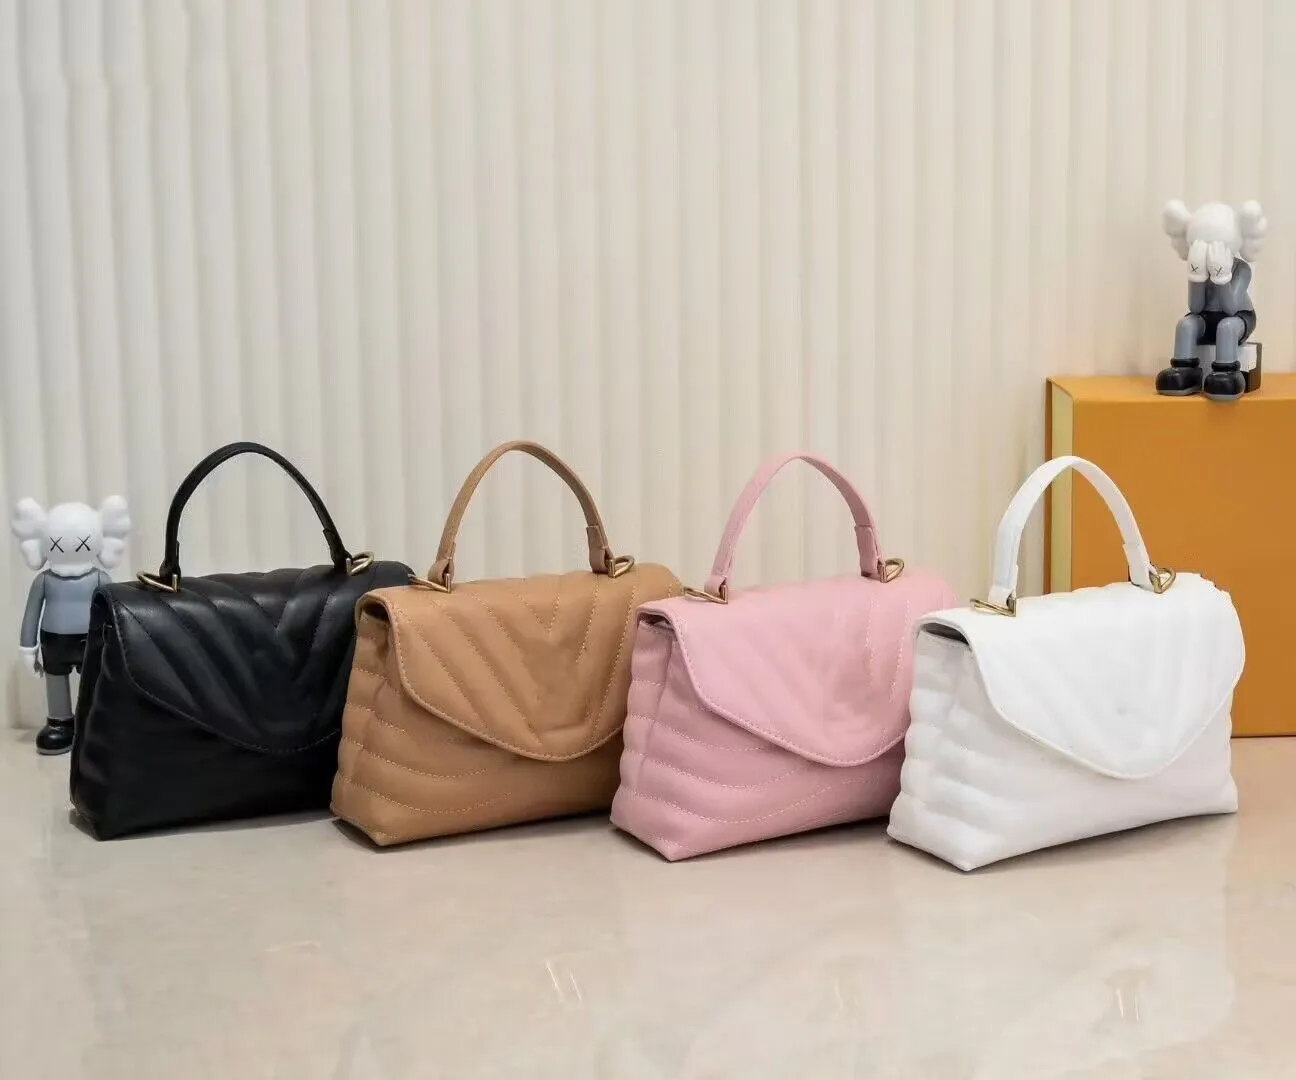 10A Desigener Bag Tactile Body сумки оснащено элегантными металлическими пряжками. Съемный и регулируемый кожаный ремешок улучшает простоту переноса этой сумочки